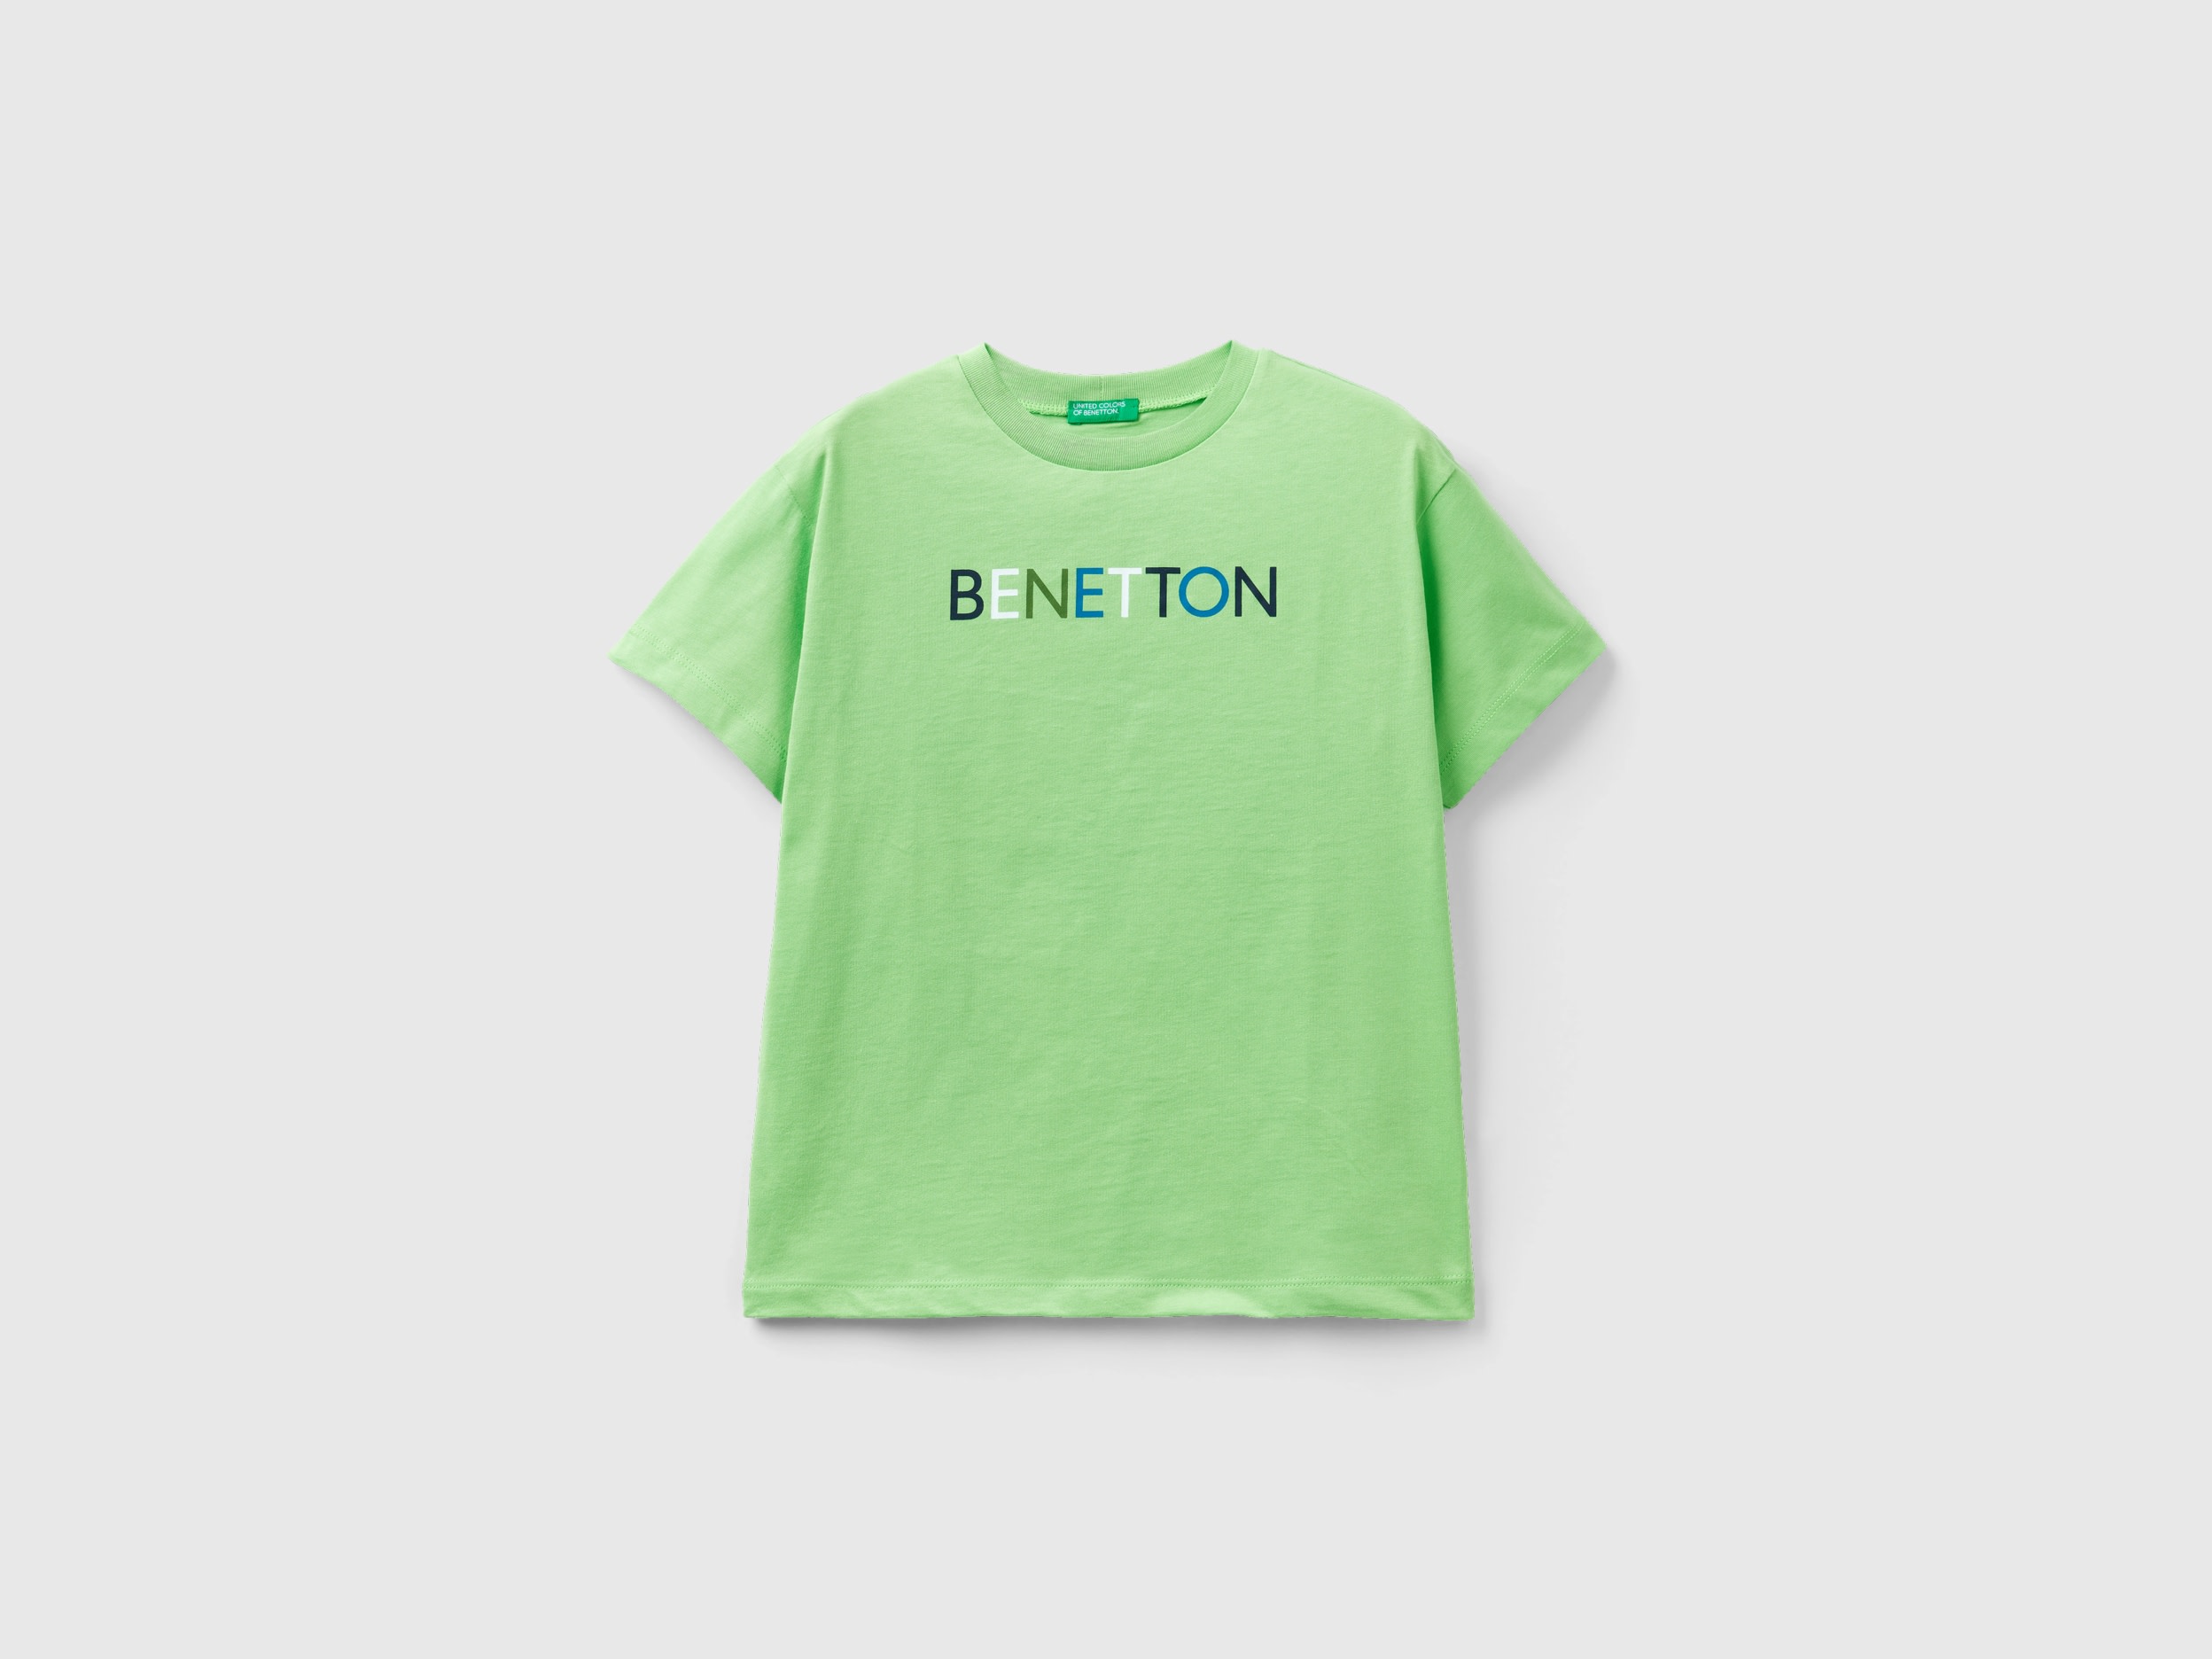 Benetton, 100% Organic Cotton T-shirt, size S, Light Green, Kids